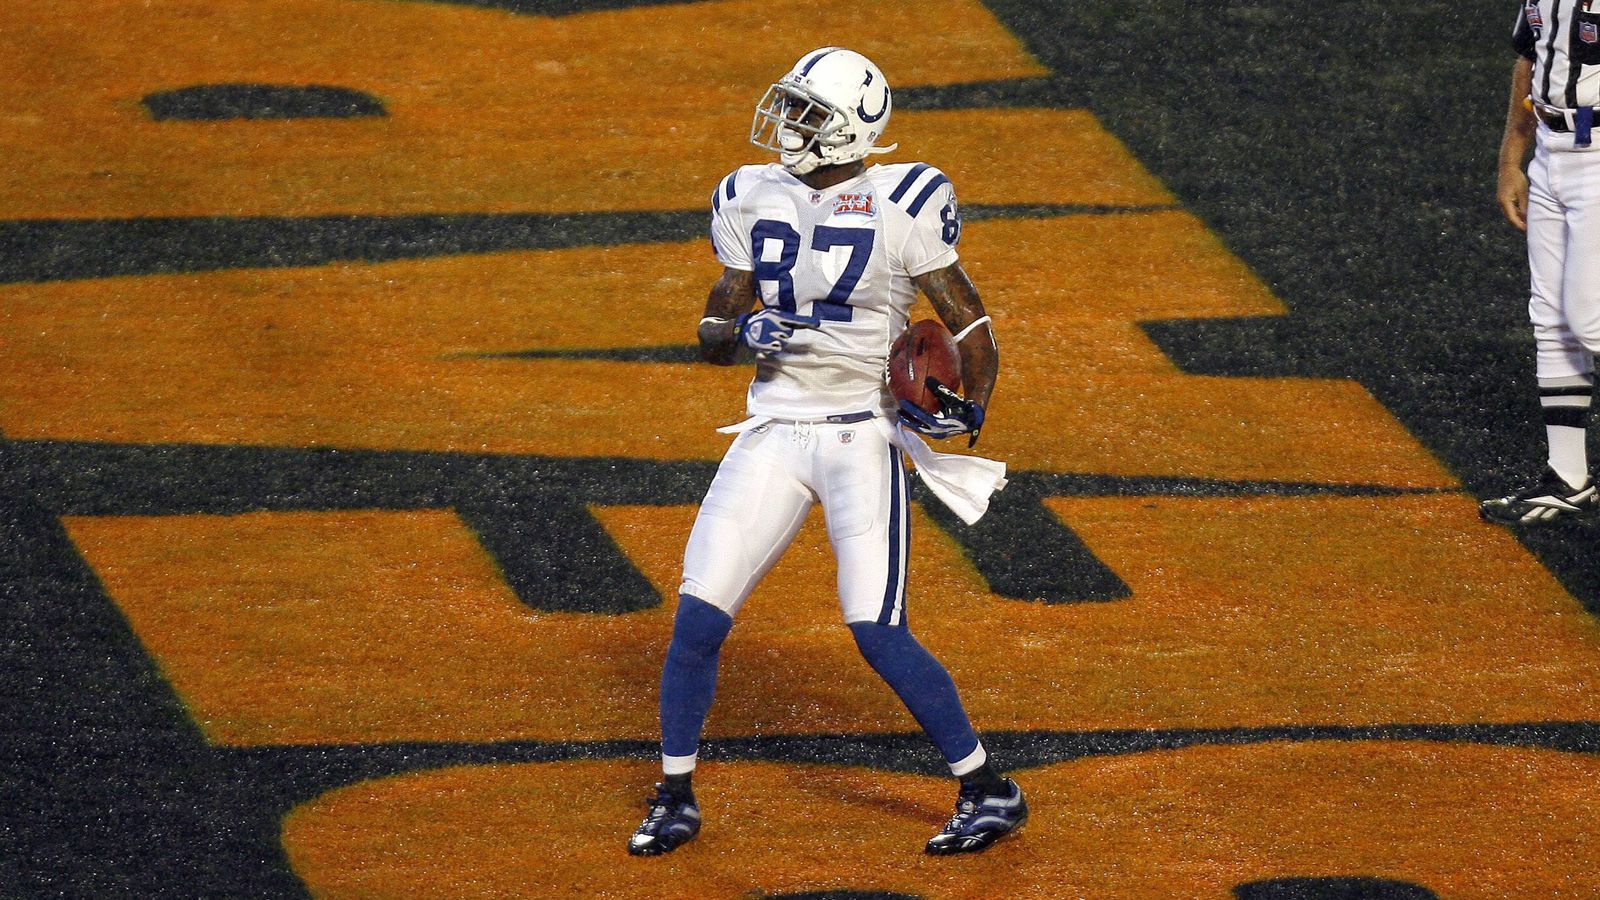 
                <strong>Reggie Wayne (Indianapolis Colts) - Wide Receiver</strong><br>
                Die Karriere des langjährigen Receivers von Peyton Manning wurde lange Zeit von Marvin Harrison, seinem Kollegen auf der Receiver-Position, überschattet. Waynes Statistiken sprechen hingegen eine deutliche Sprache: sieben Pro Bowl-Teilnahmen, Top-10-Platzierungen bei Receptions und Receiving Yards der NFL-Geschichte sowie der Gewinn von Super Bowl XLI. Der Wide Receiver ist Mitglied im Ring of Honor der Indianapolis Colts und hält den Rekord für die meisten Spiele und Siege der Franchise. Wayne war im vergangenen Jahr das erste Mal aufnahmeberechtigt und hat gute Chancen, im nächsten Jahr mit seinem alten Teamkollege Manning in die Hall of Fame aufgenommen zu werden.
              